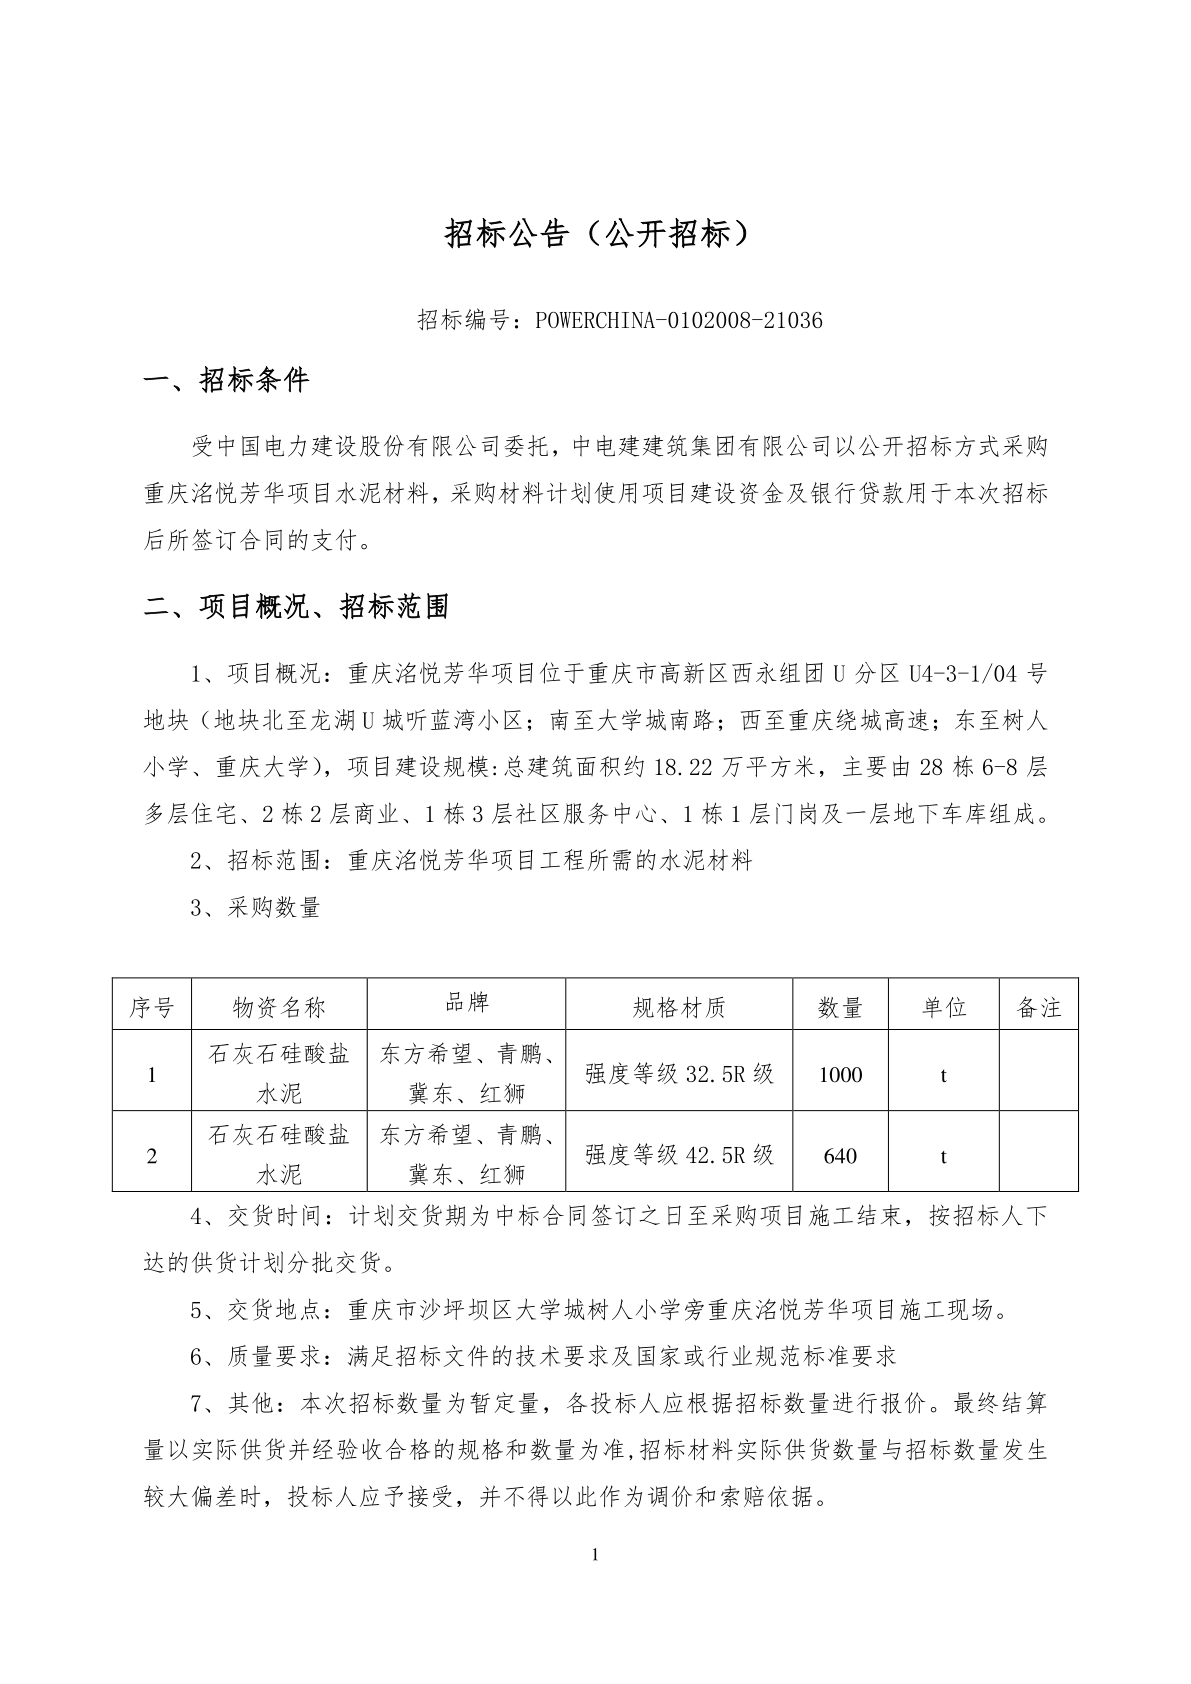 建电建建筑公司第二工程公司重庆洺悦芳华硅酸盐水泥采购项目招标公告